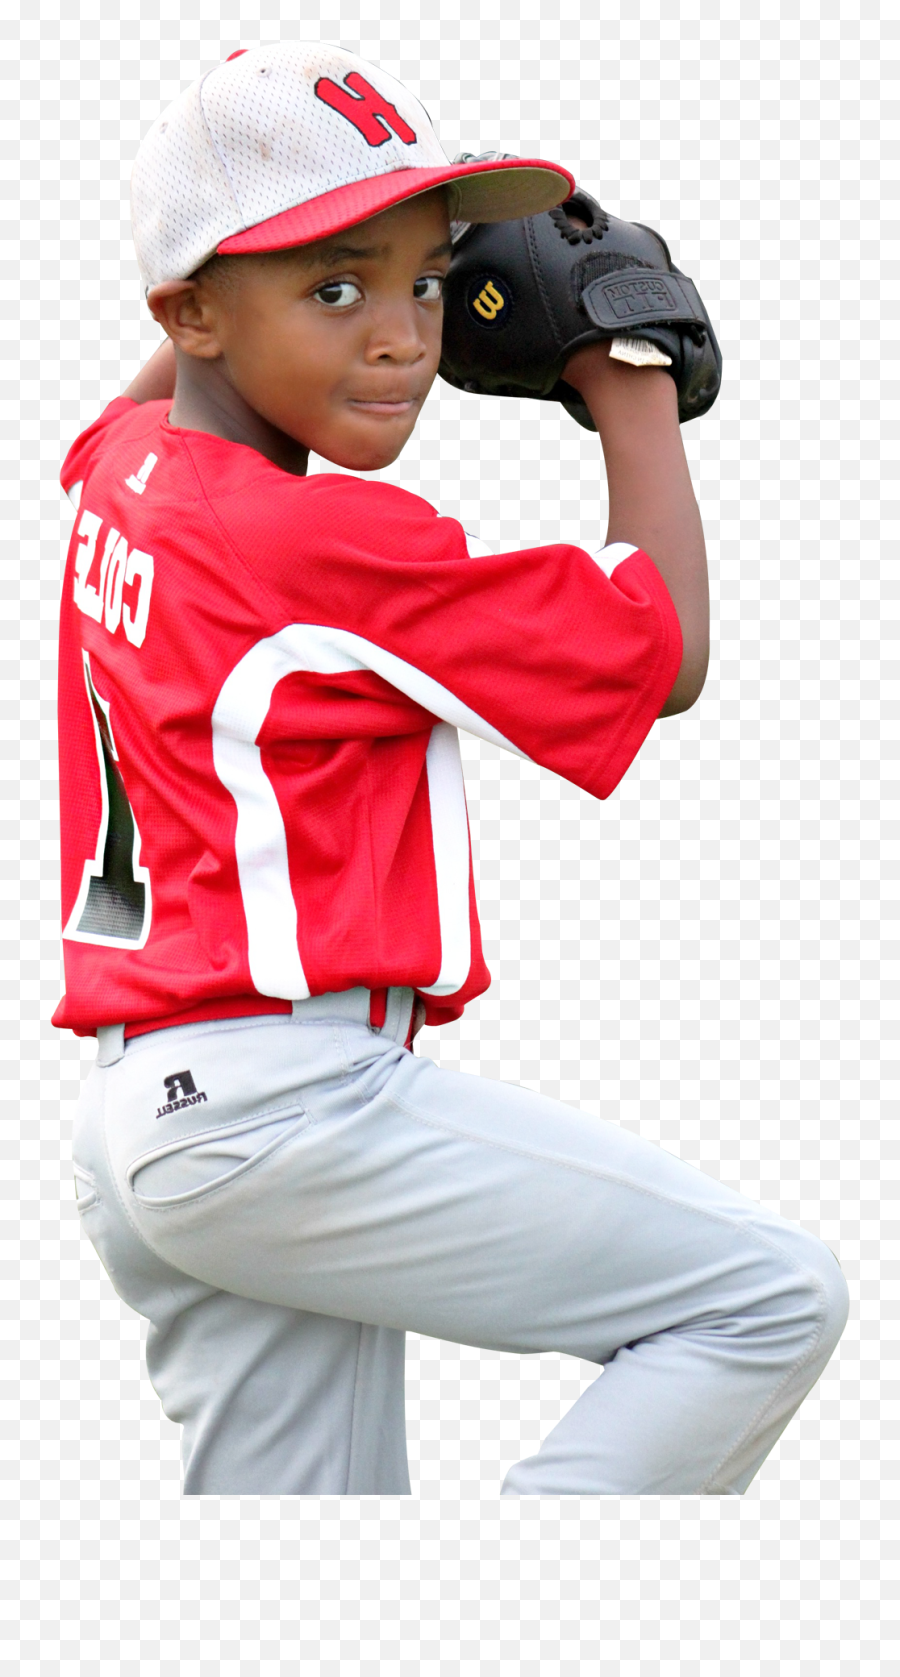 Baseball Player Png - Baseball Player Kid Transparent Background,Baseball Transparent Background